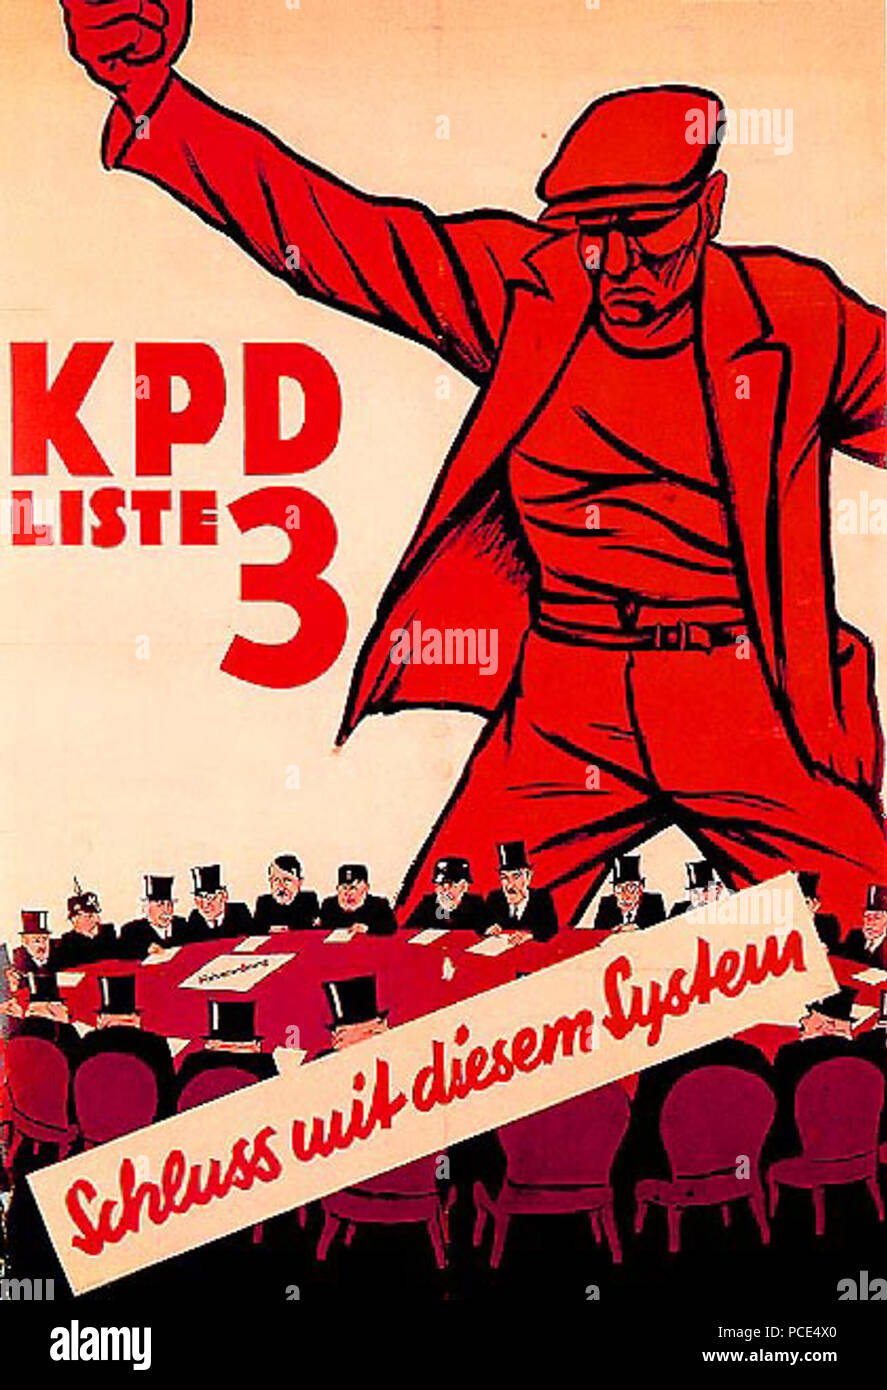 13 1932 - Kpd Stockfoto